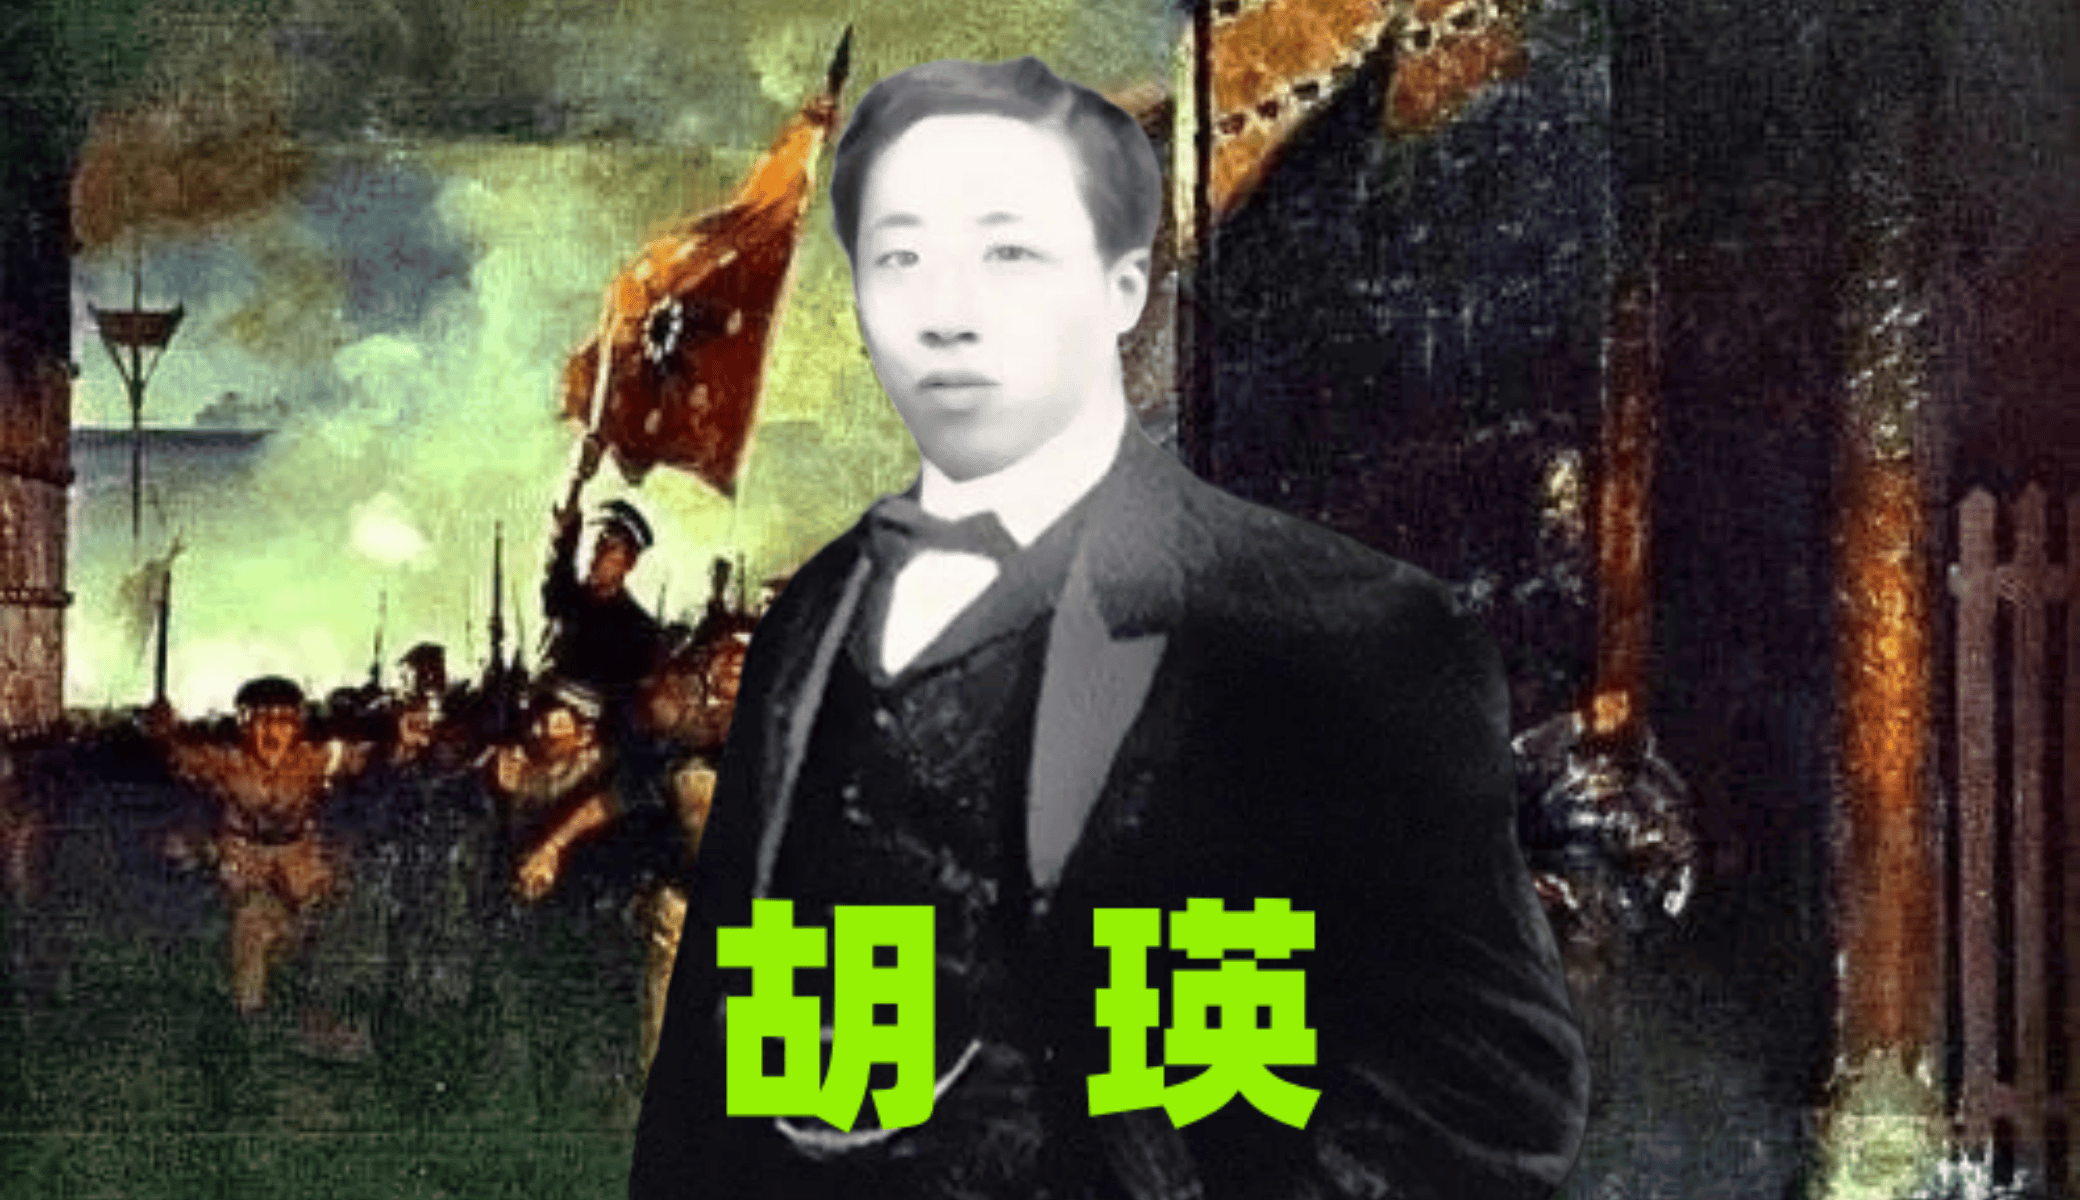 军总指挥的云南胡瑛;而另一个则是民国第一任外交总长的湖湘豪杰胡瑛